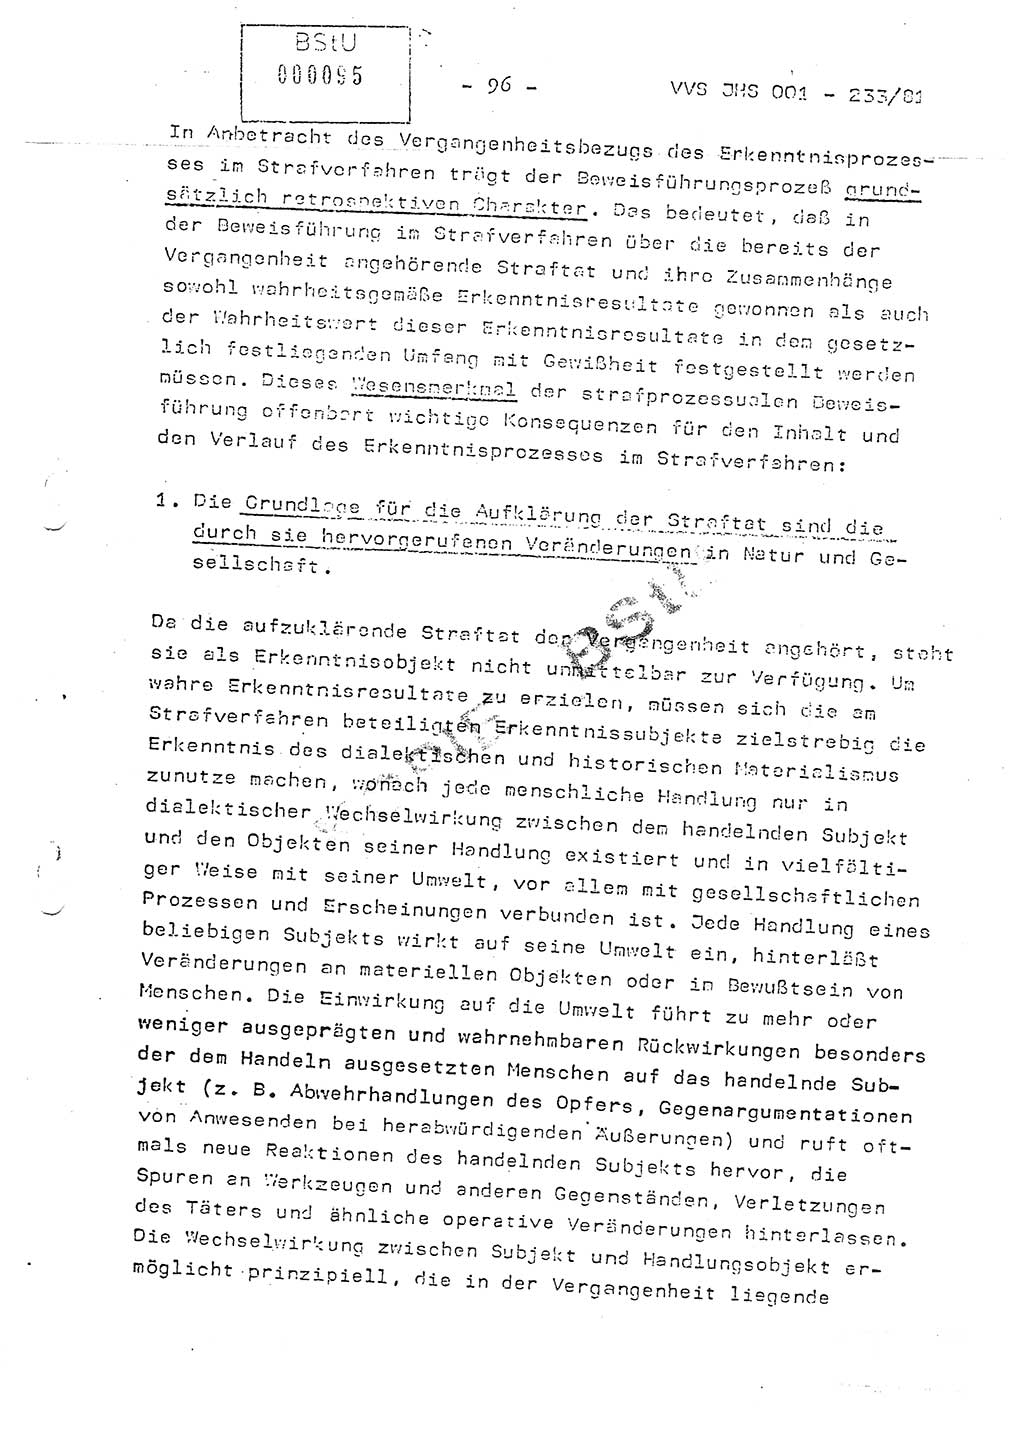 Dissertation Oberstleutnant Horst Zank (JHS), Oberstleutnant Dr. Karl-Heinz Knoblauch (JHS), Oberstleutnant Gustav-Adolf Kowalewski (HA Ⅸ), Oberstleutnant Wolfgang Plötner (HA Ⅸ), Ministerium für Staatssicherheit (MfS) [Deutsche Demokratische Republik (DDR)], Juristische Hochschule (JHS), Vertrauliche Verschlußsache (VVS) o001-233/81, Potsdam 1981, Blatt 96 (Diss. MfS DDR JHS VVS o001-233/81 1981, Bl. 96)